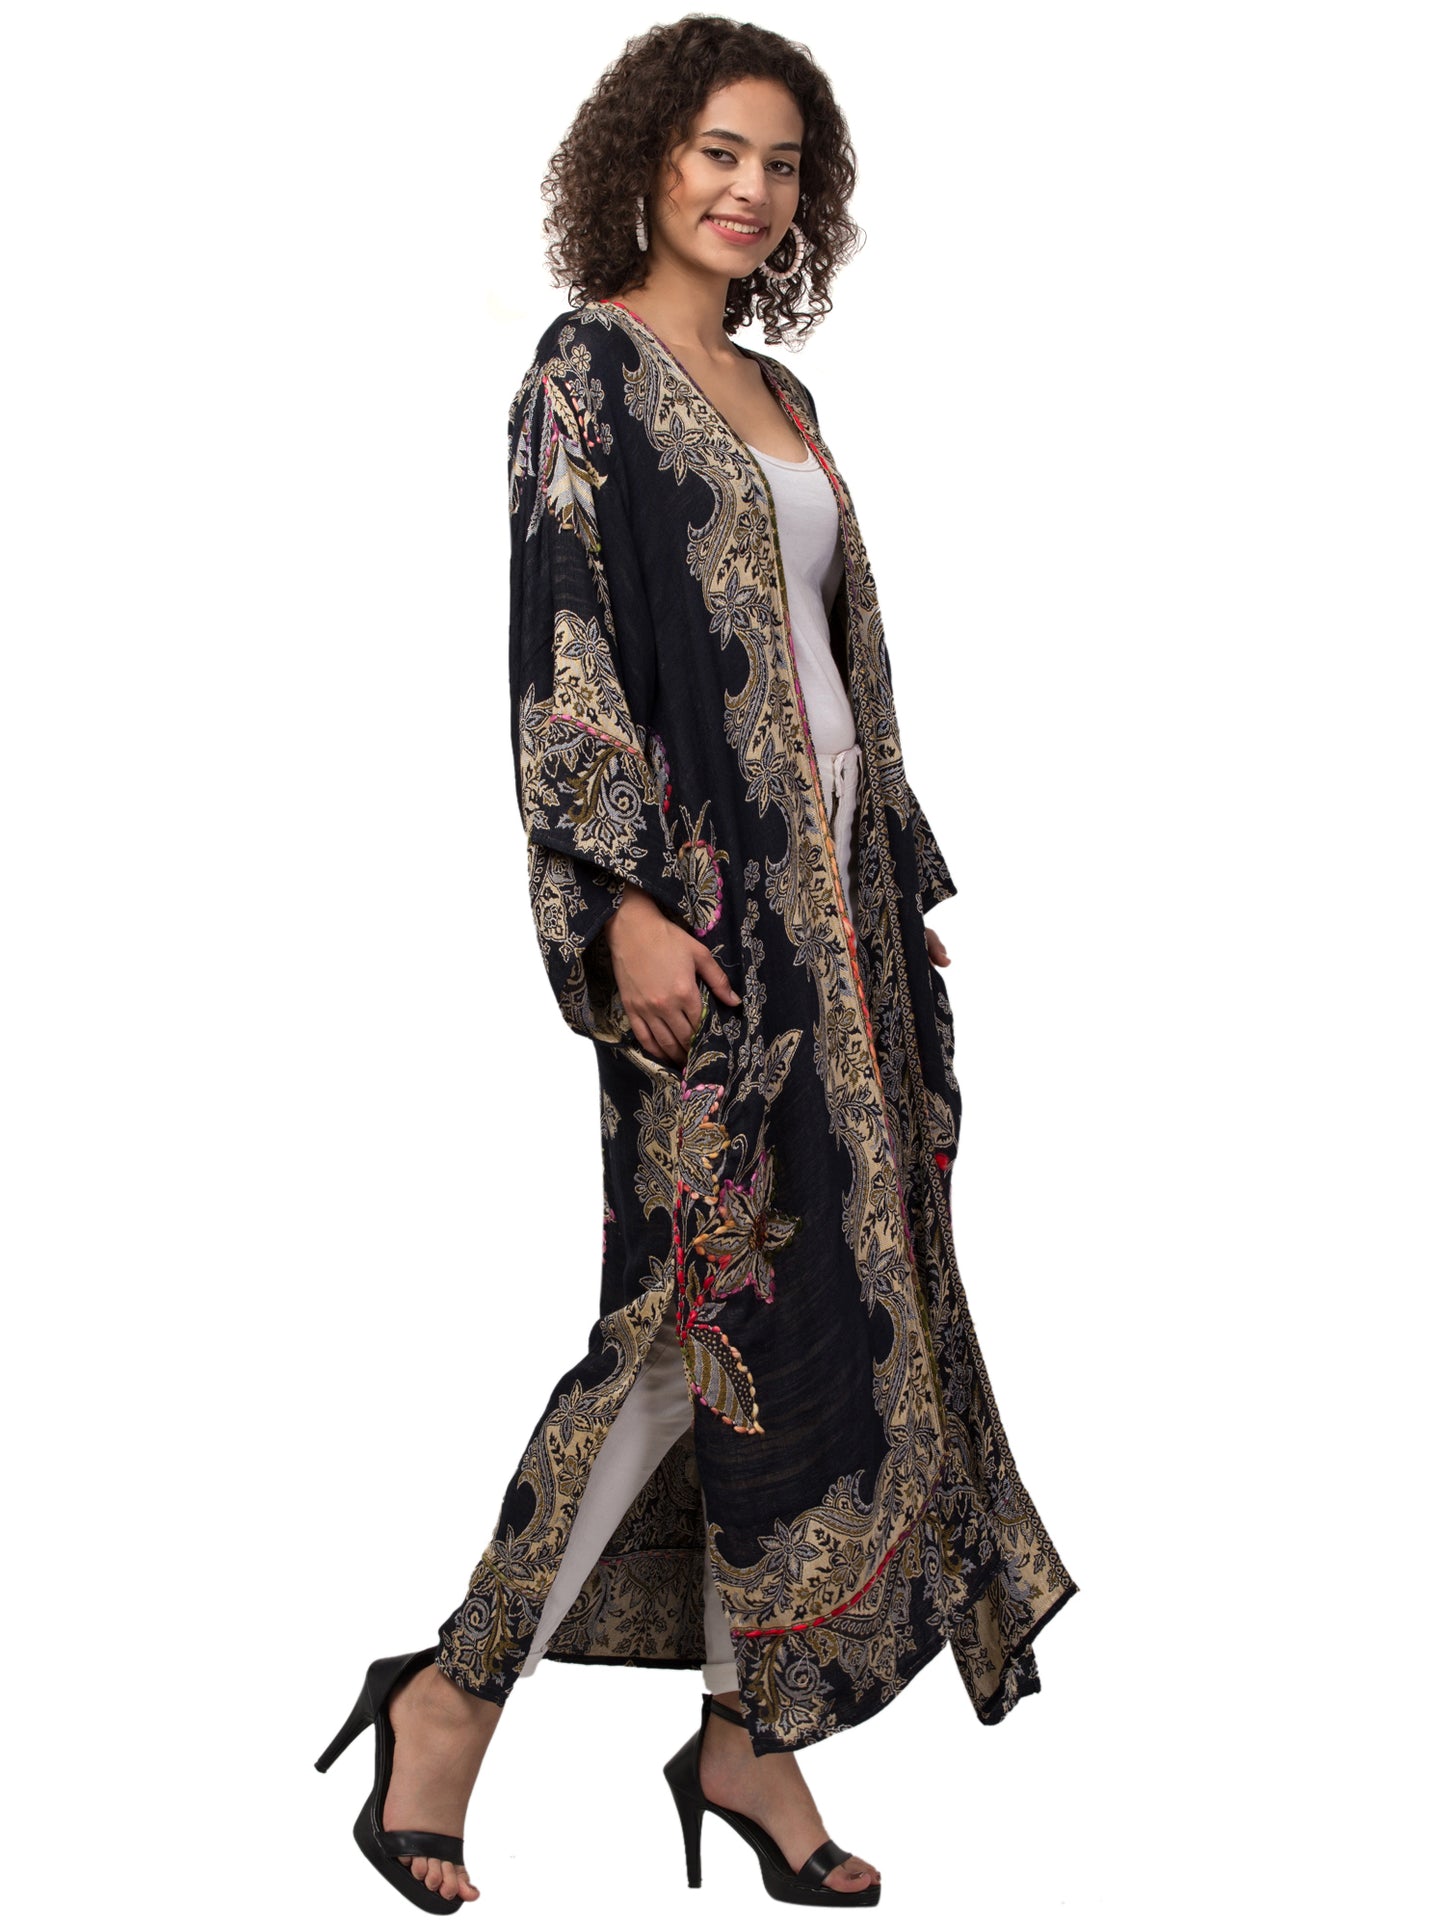 Carolina Cara Kimono Jacket